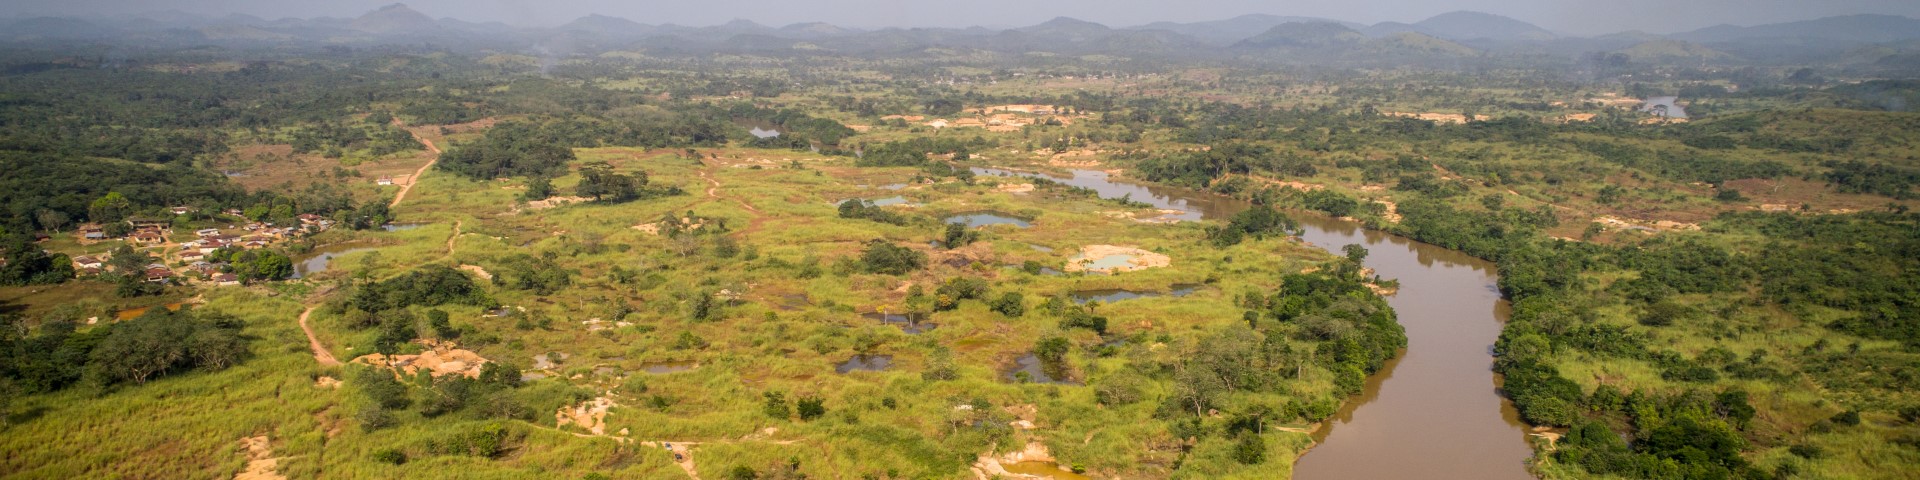 Der Fluss Mano schlängelt sich durch eine grüne Landschaft in Sierra Leone. Copyright: GIZ / Michael Duff